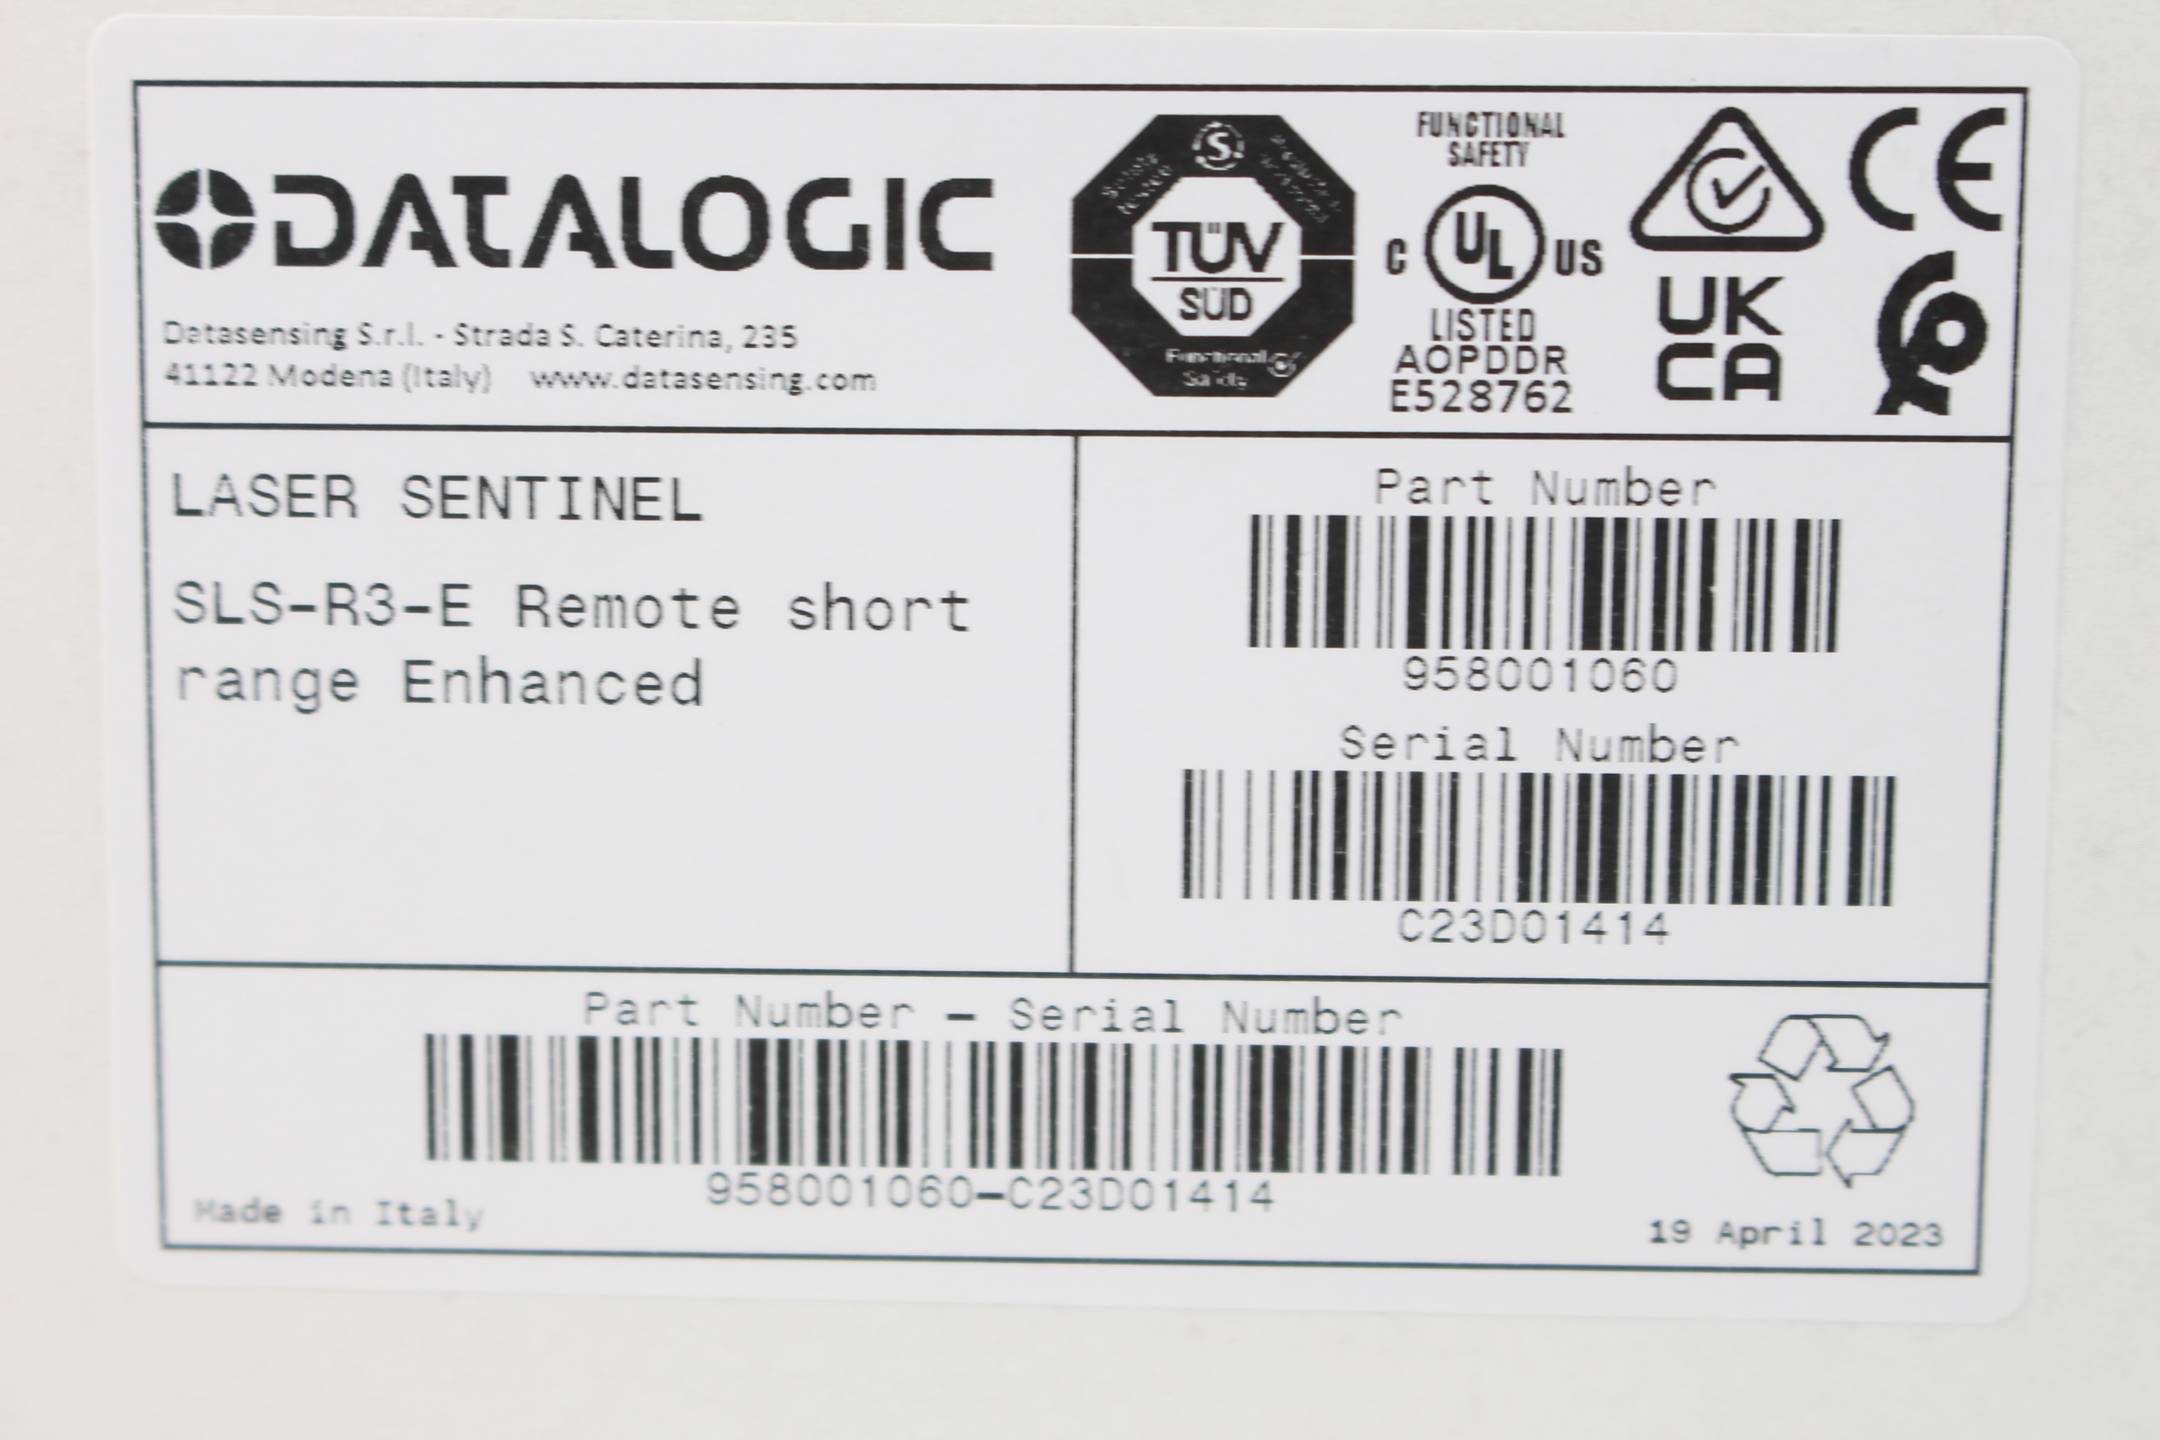 Datalogic SLS-R3-E Laser Sentinel ( 958001060 )